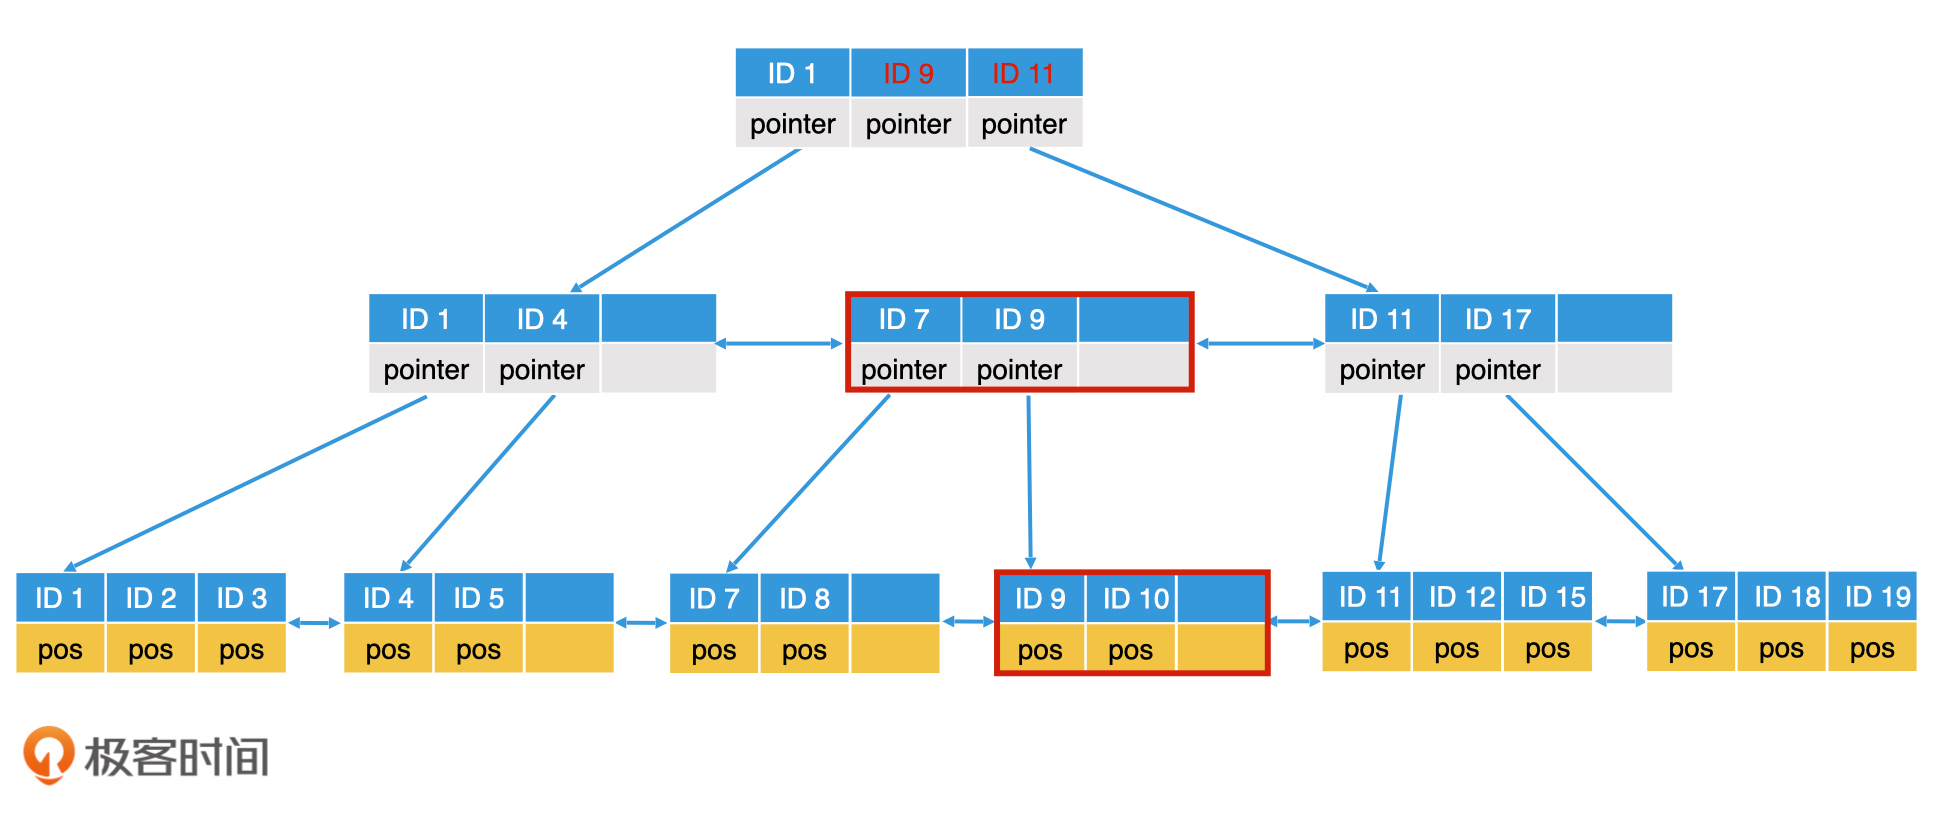 06-数据库检索：如何使用B-树对海量磁盘数据建立索引？